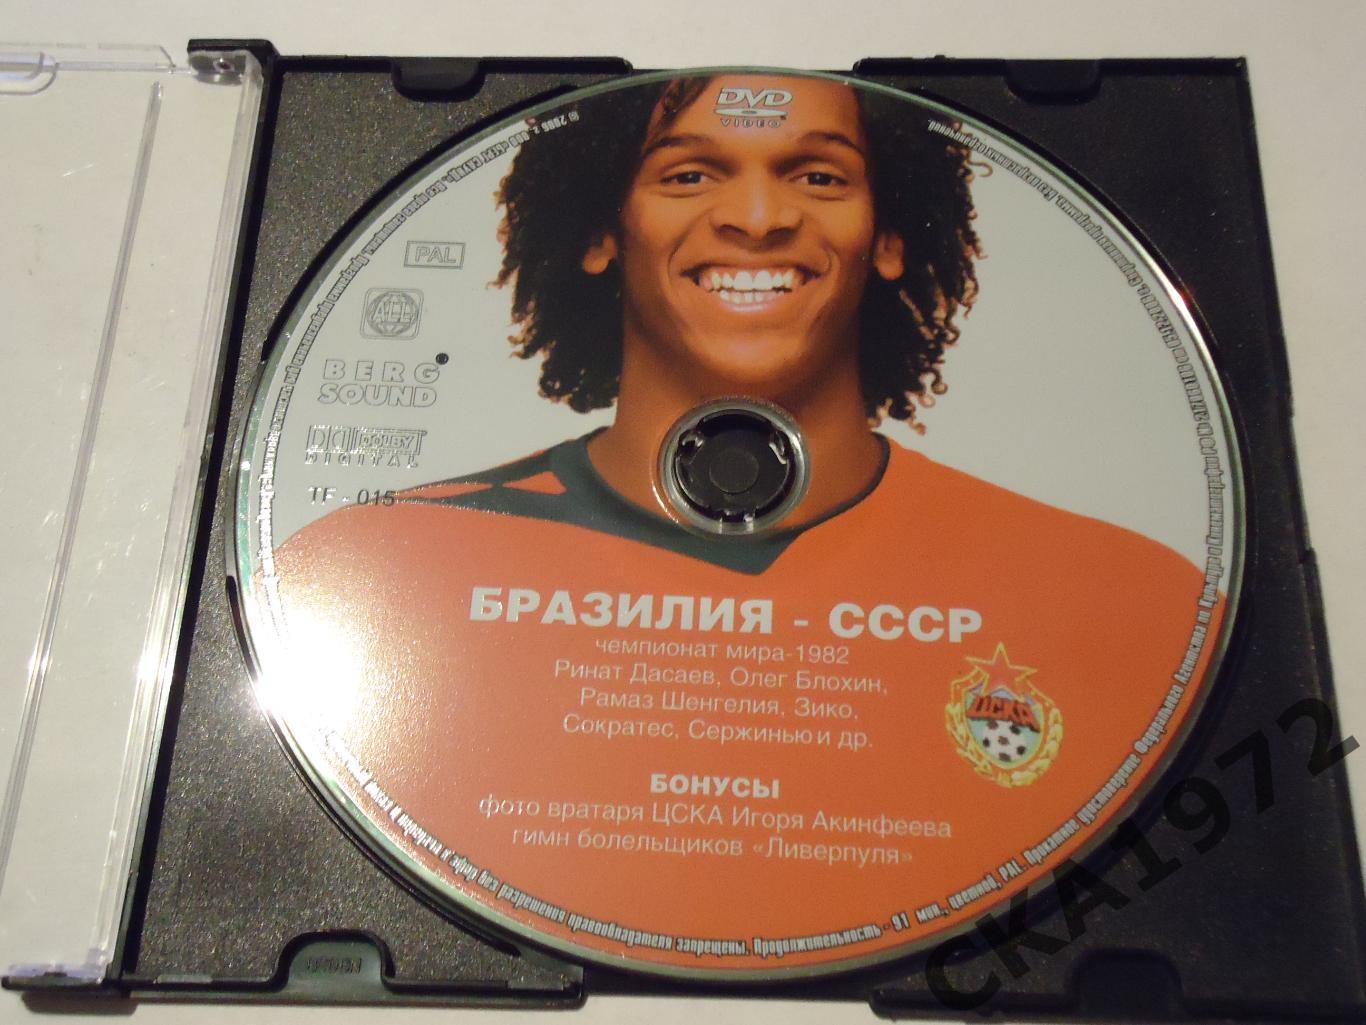 DVD футбольный матч Бразилия-СССР чемпионат мира 1982 +++